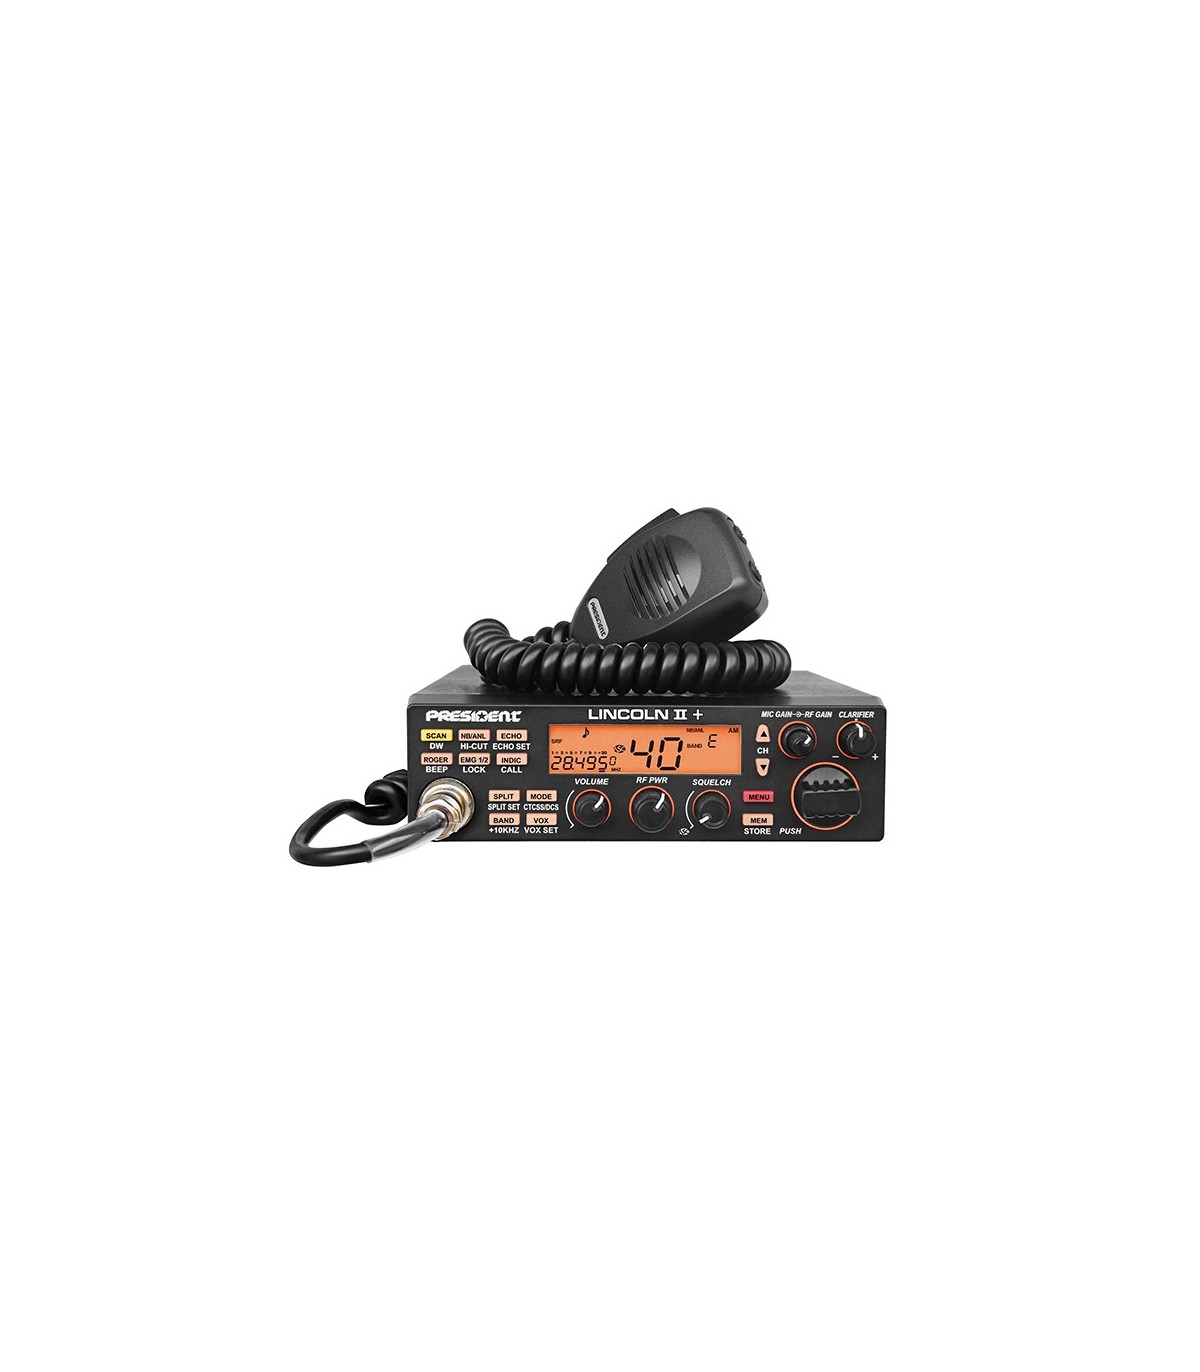 PRESIDENT emisora CB AM/FM/LSB/USB/CW, con funciones y VOX - Komunica Power